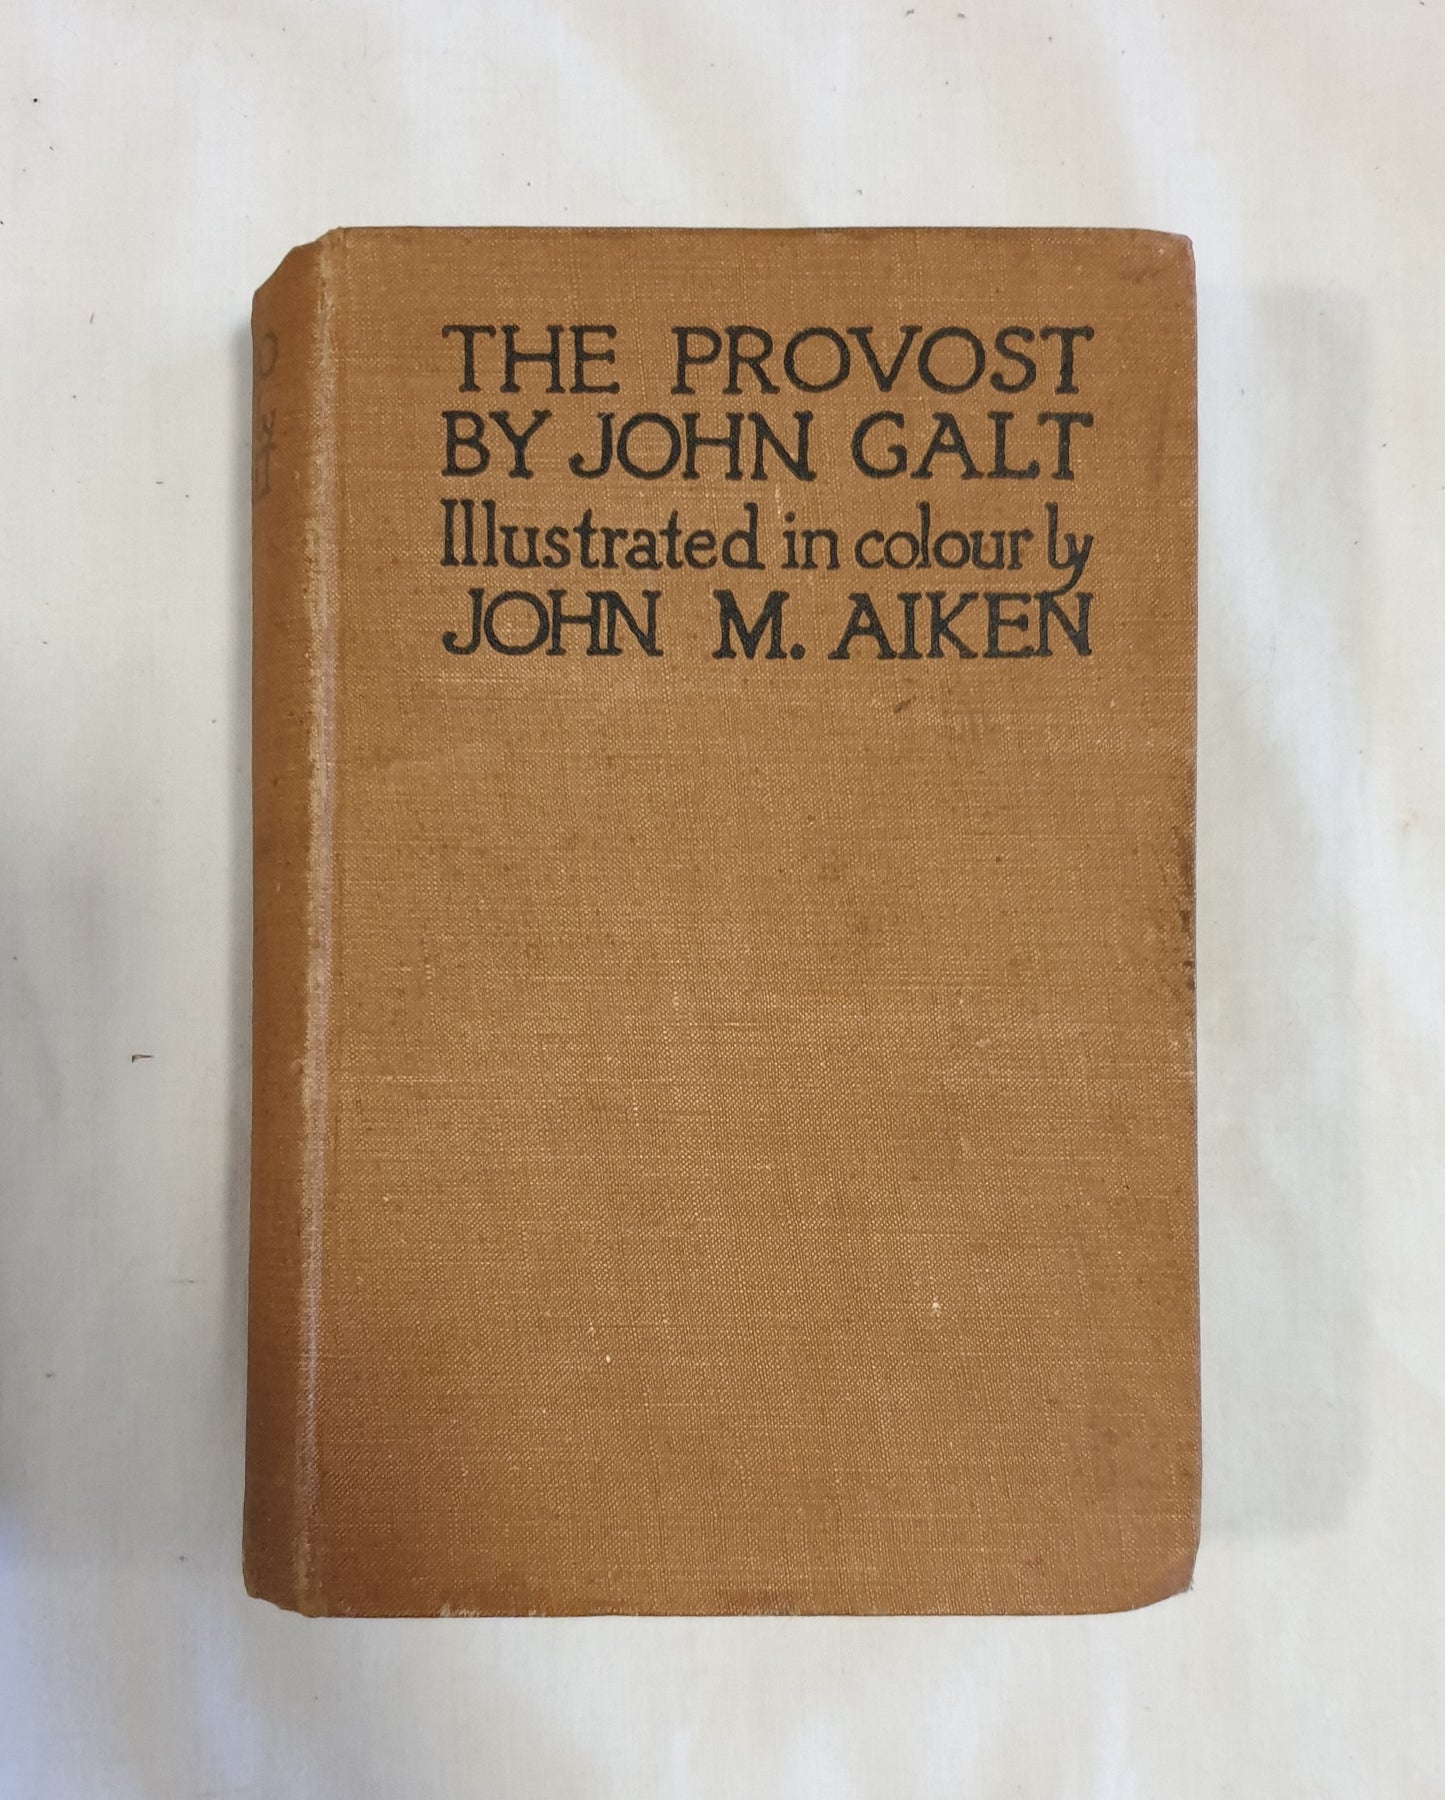 The Provost By John Galt by John M. Aiken